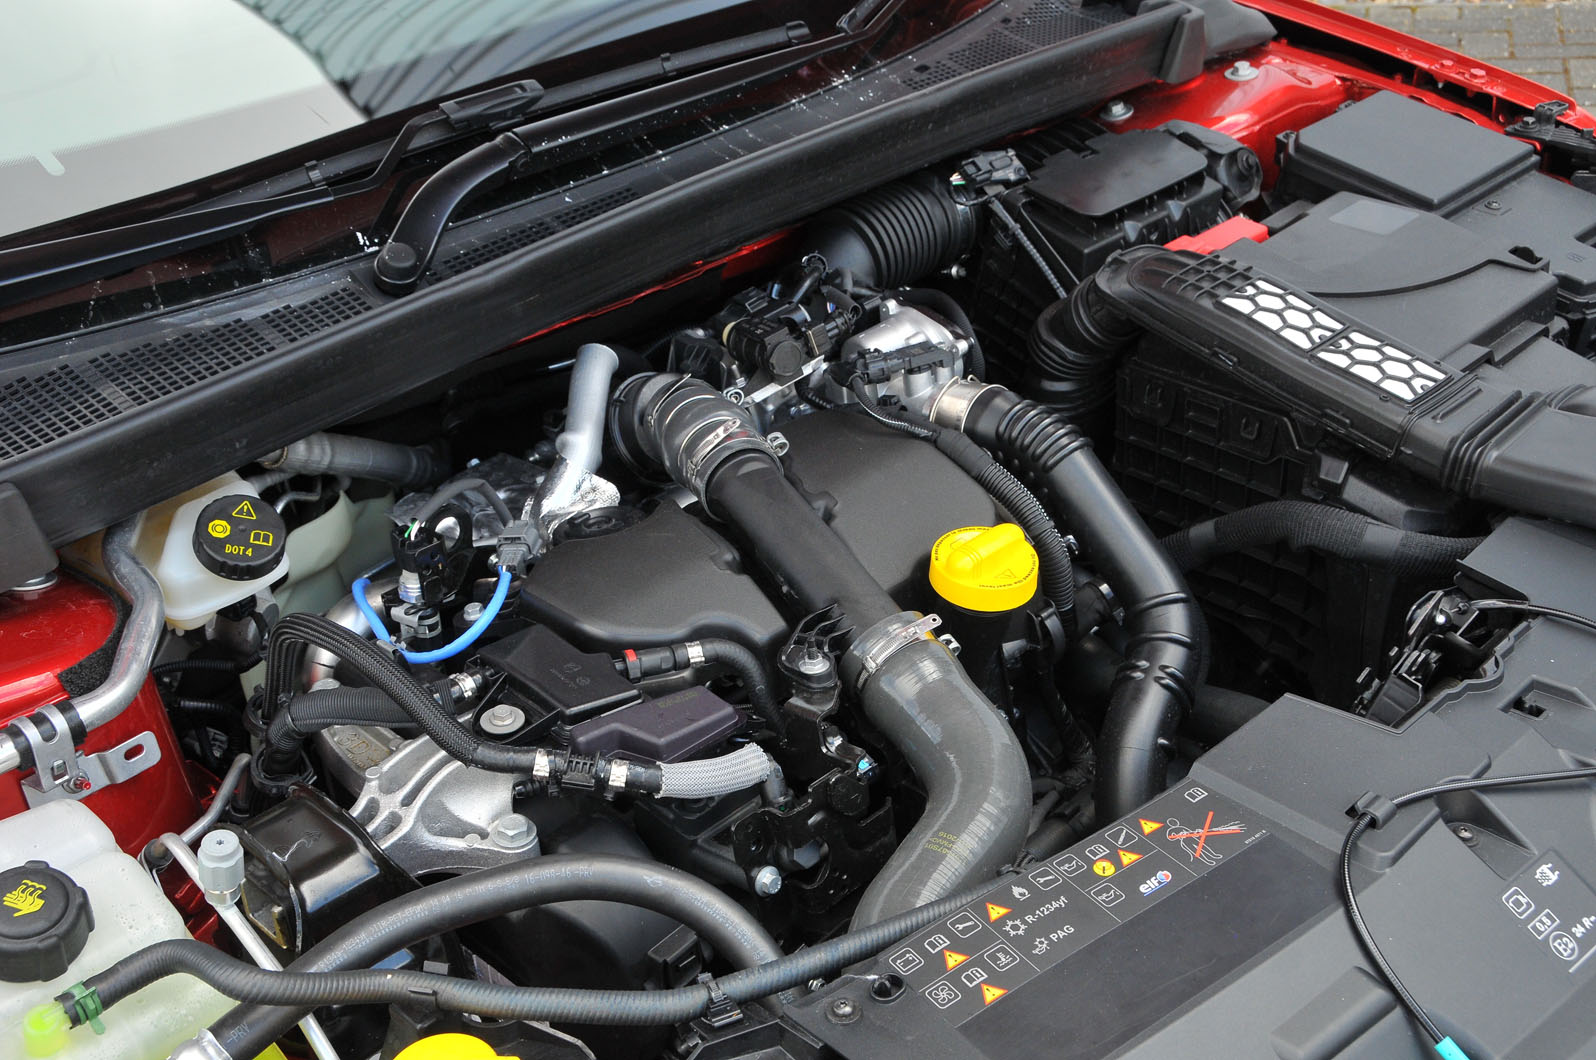 1.5-litre dCi Renault Megane engine